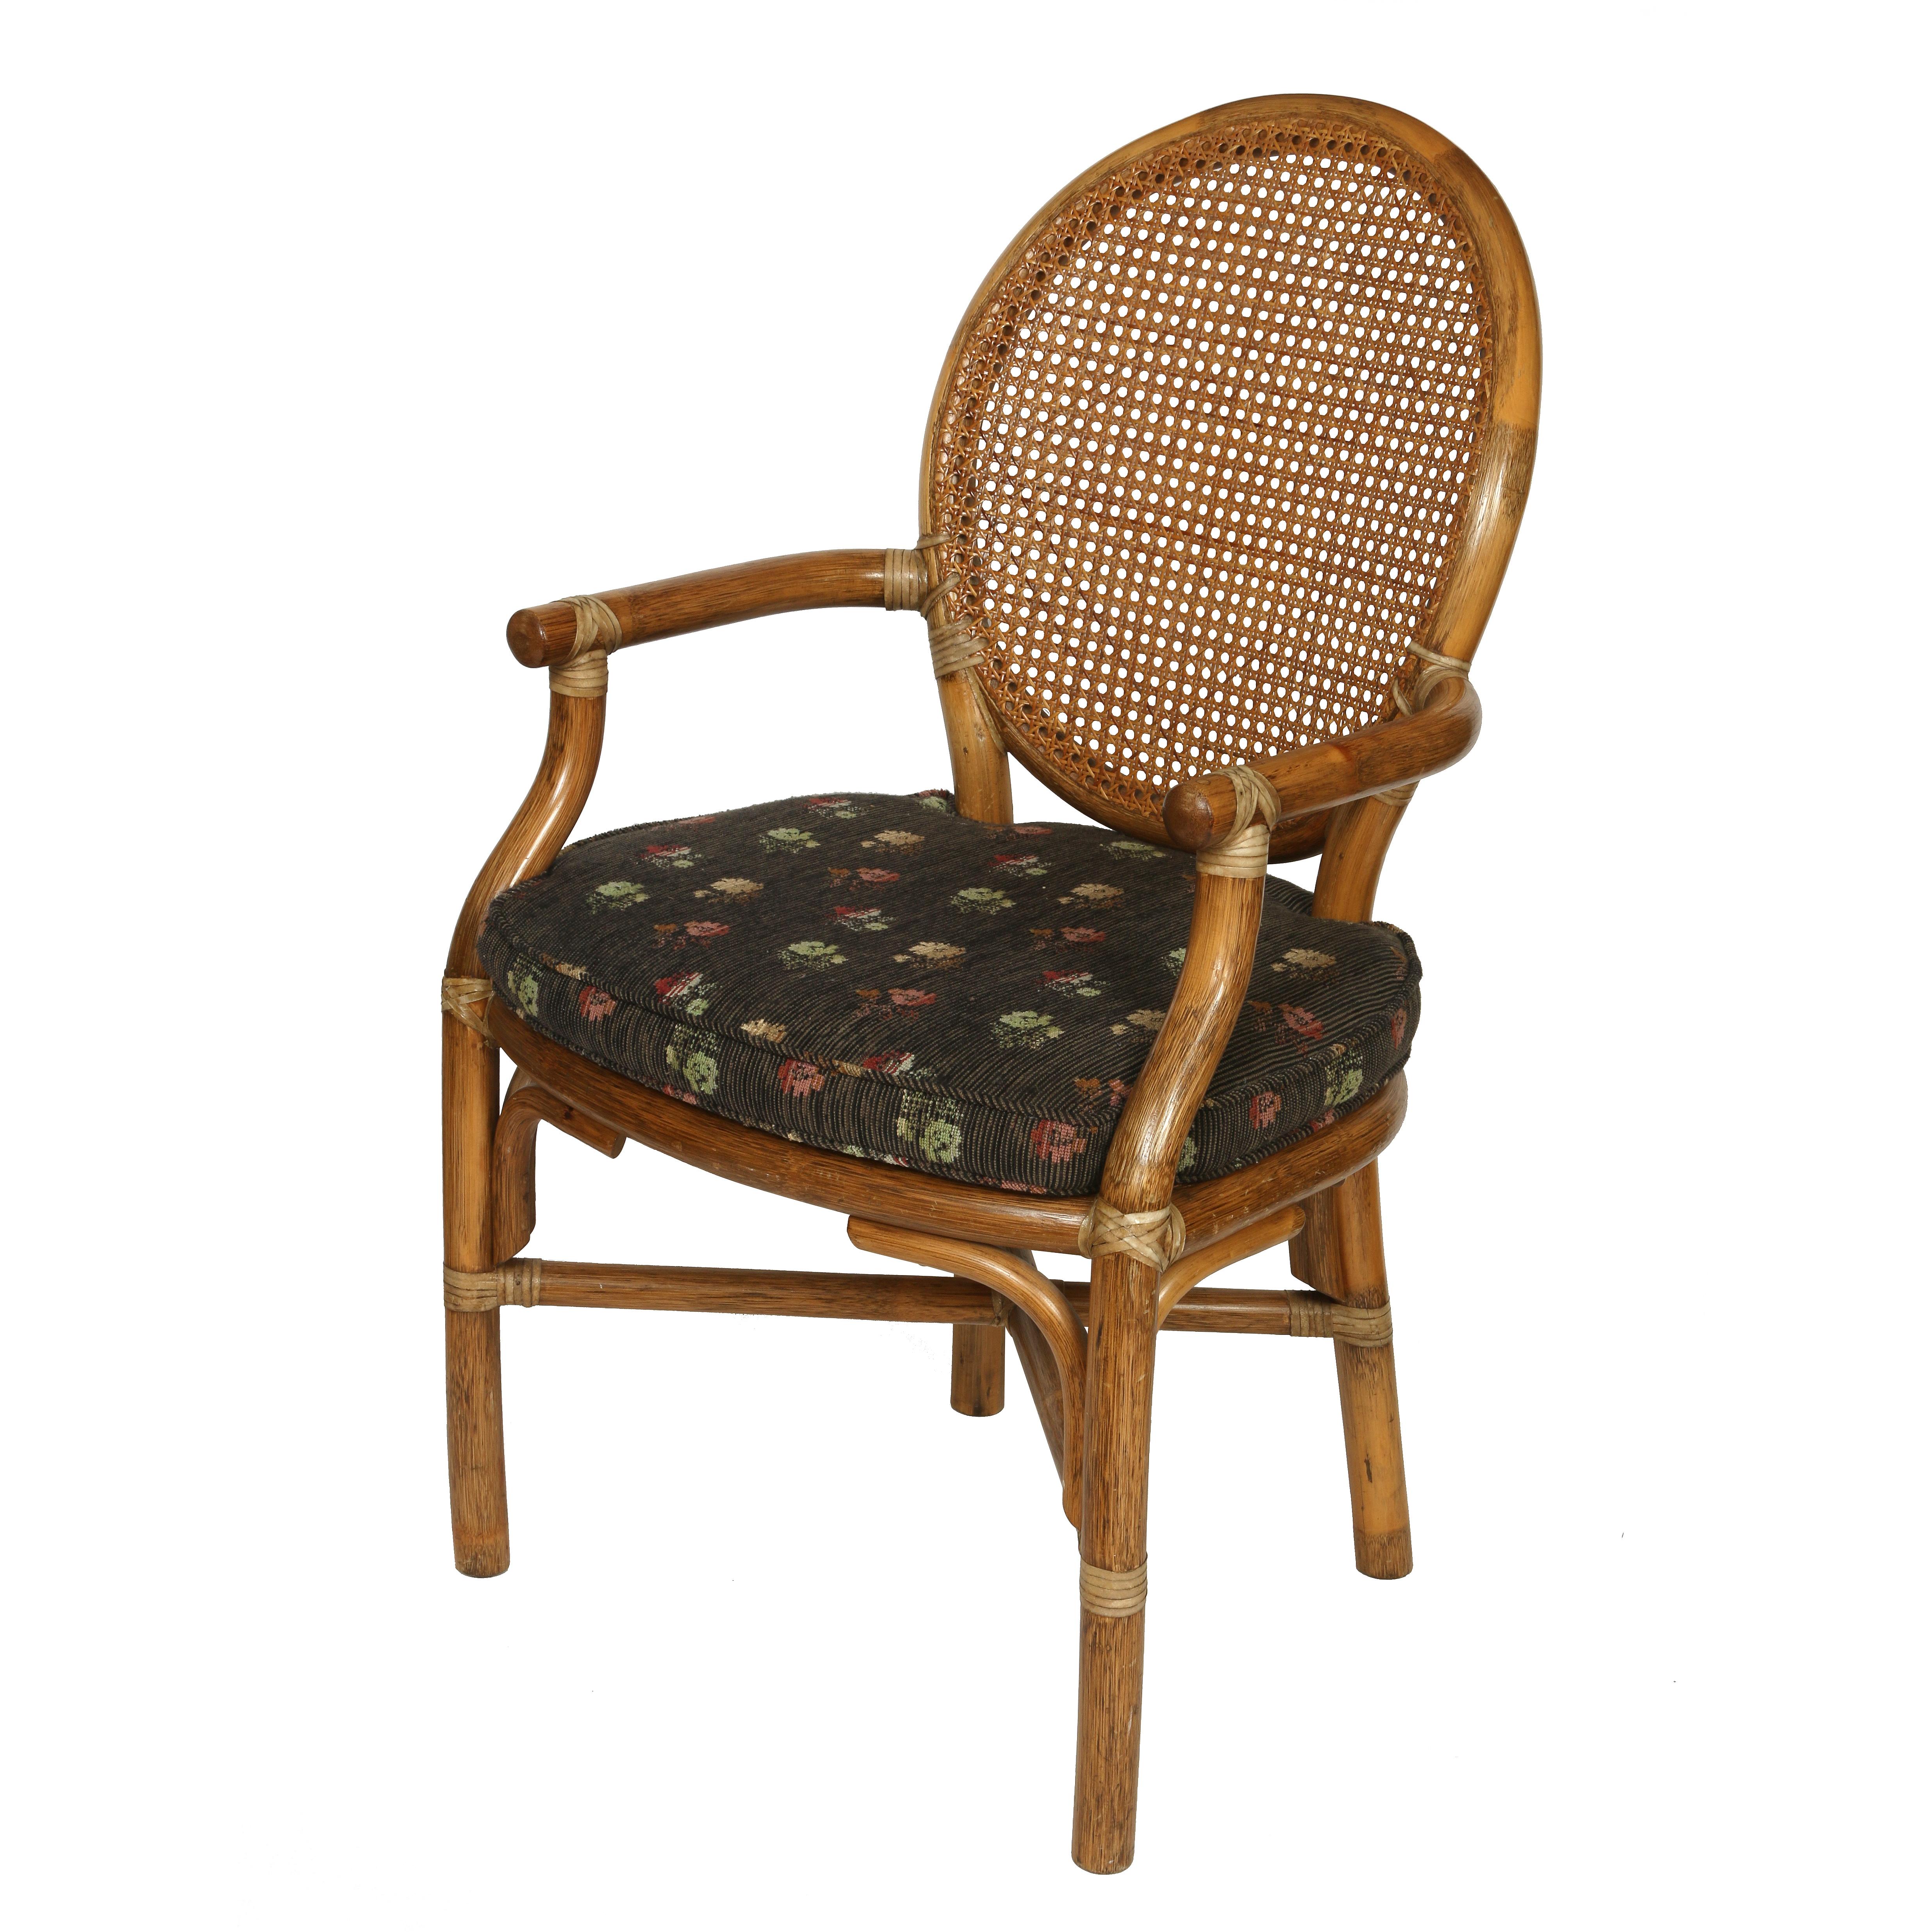 Ensemble vintage de quatre fauteuils cannés de style McGuire avec dossier ovale, assise cannée et coussins d'assise à fleurs noires.  Structure en rotin avec des bras incurvés et un brancard en forme de X reliant des pieds droits.